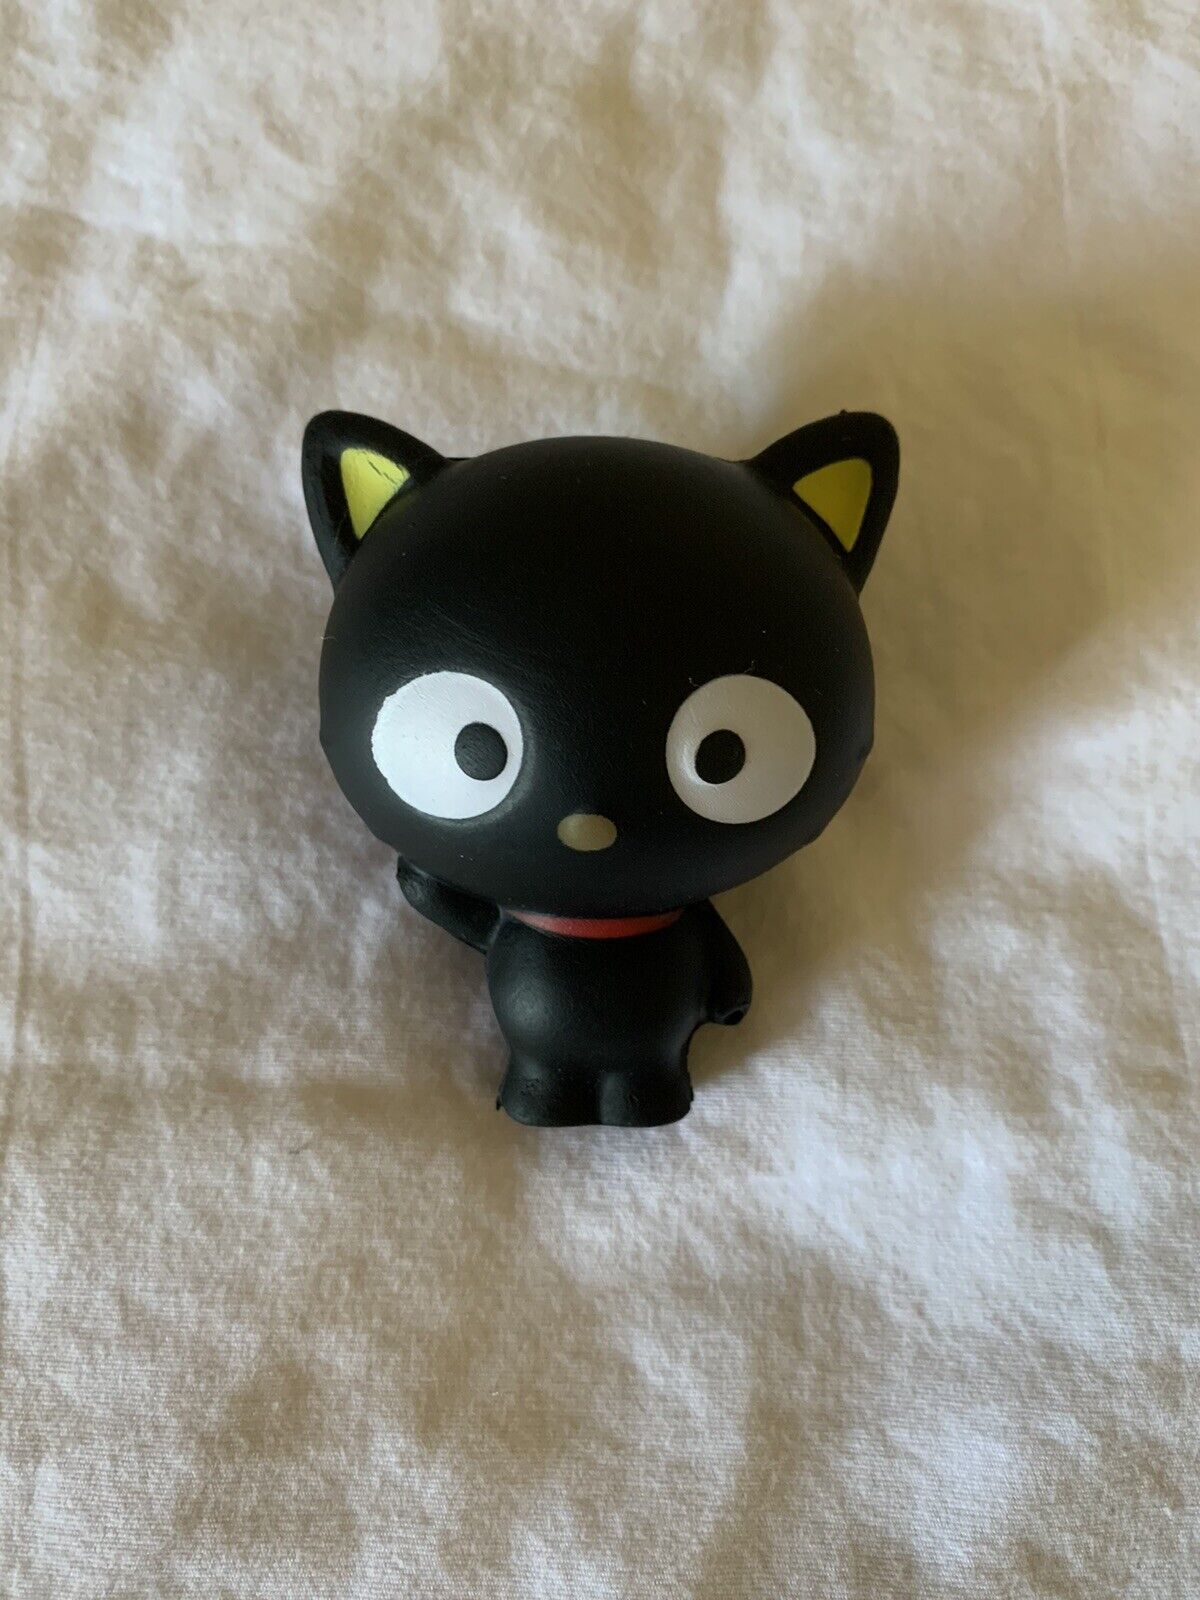 2017 Hello Sanrio Hello Kitty and Friends SquishMe Small Chococat Squishable Toy